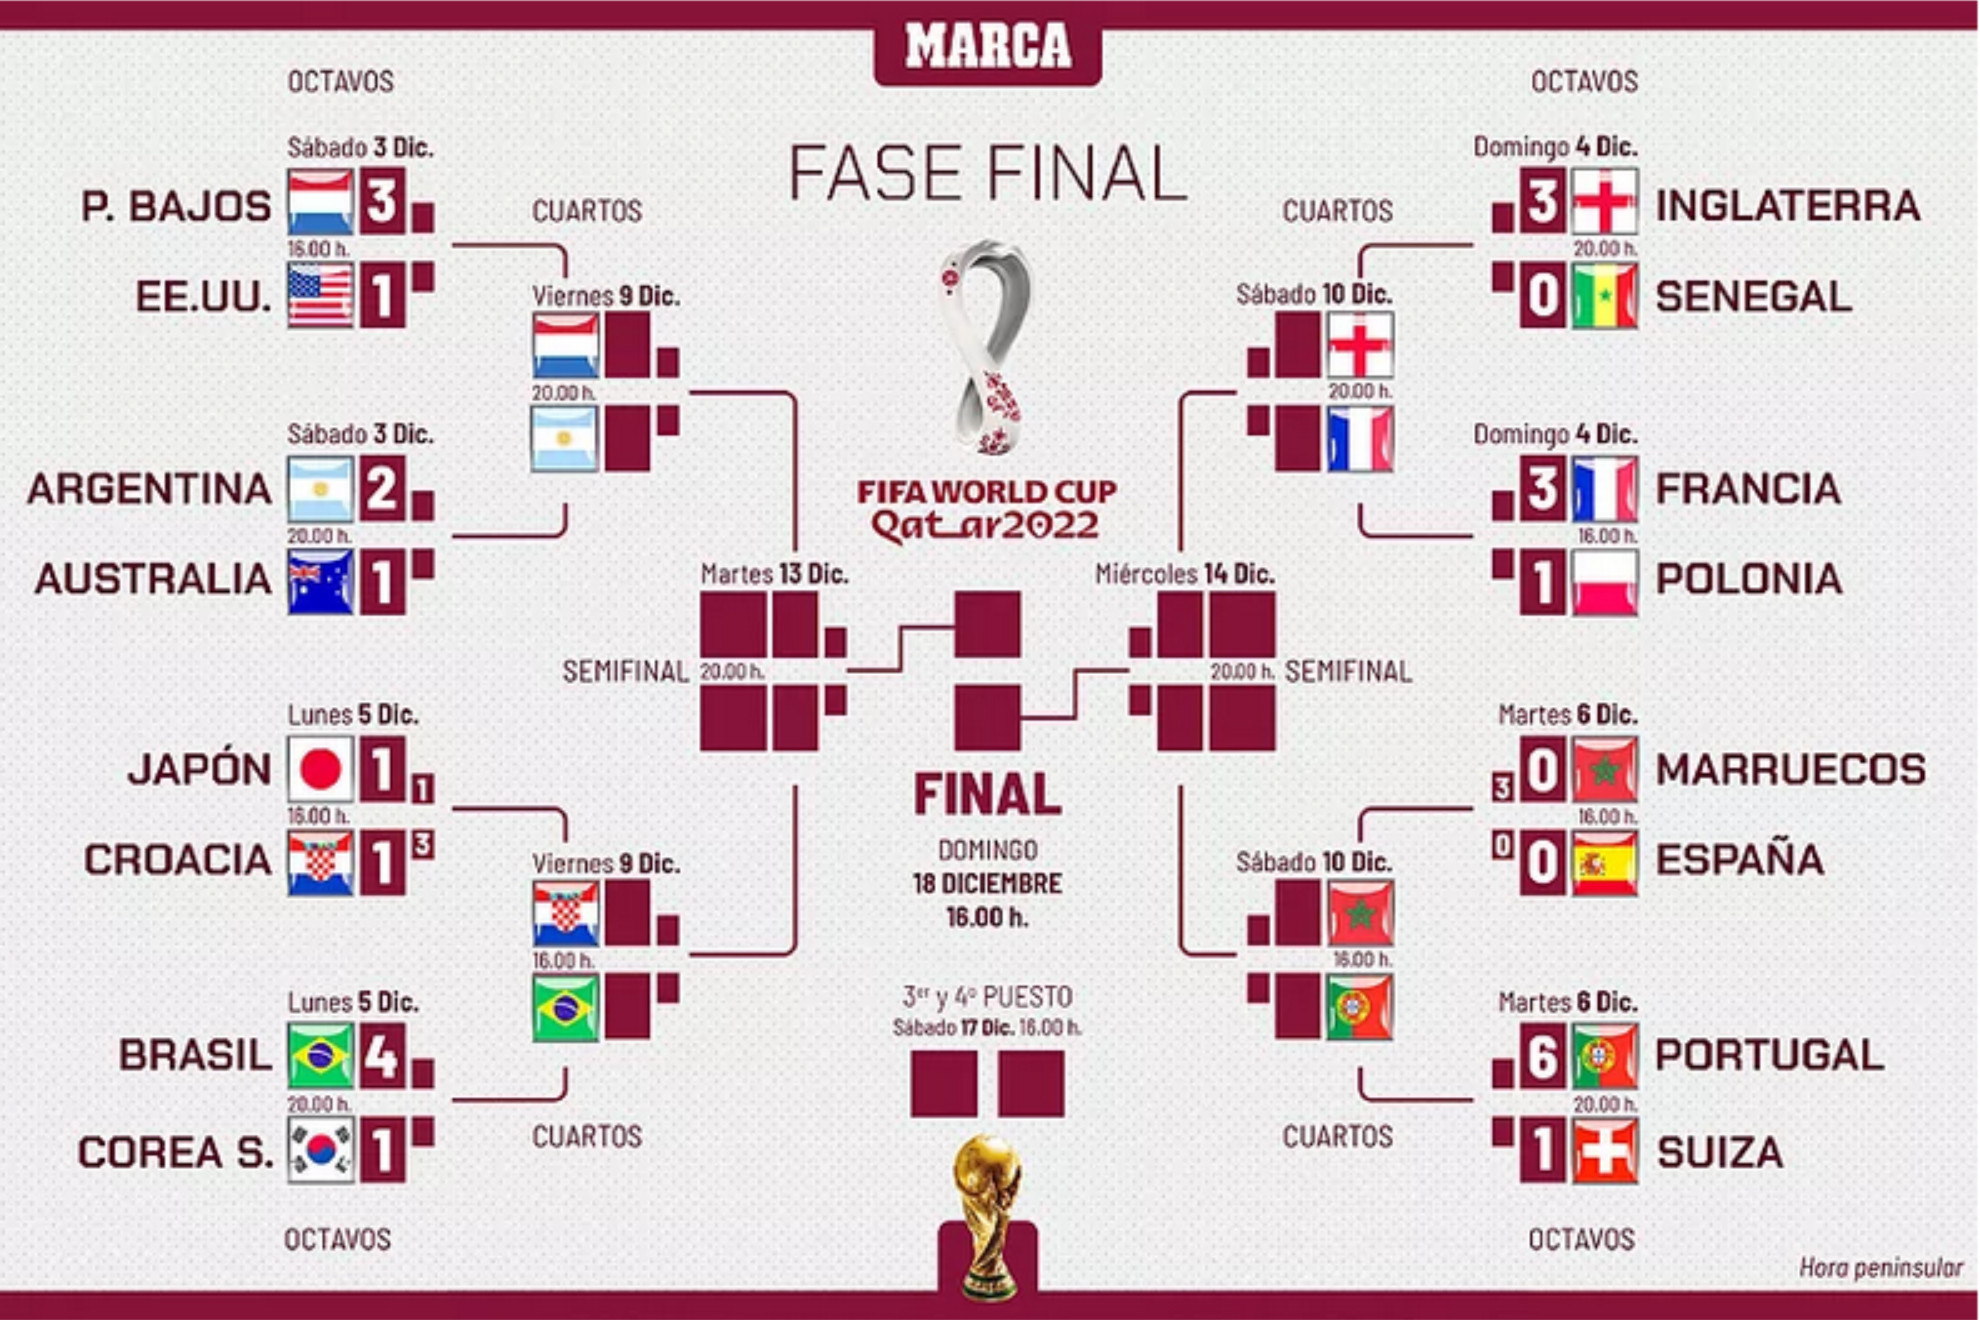 Arrancan los cuartos de final, 'La Roja' eliminada... ¿Con quién va España? ¿Qué selección cree que ganará?